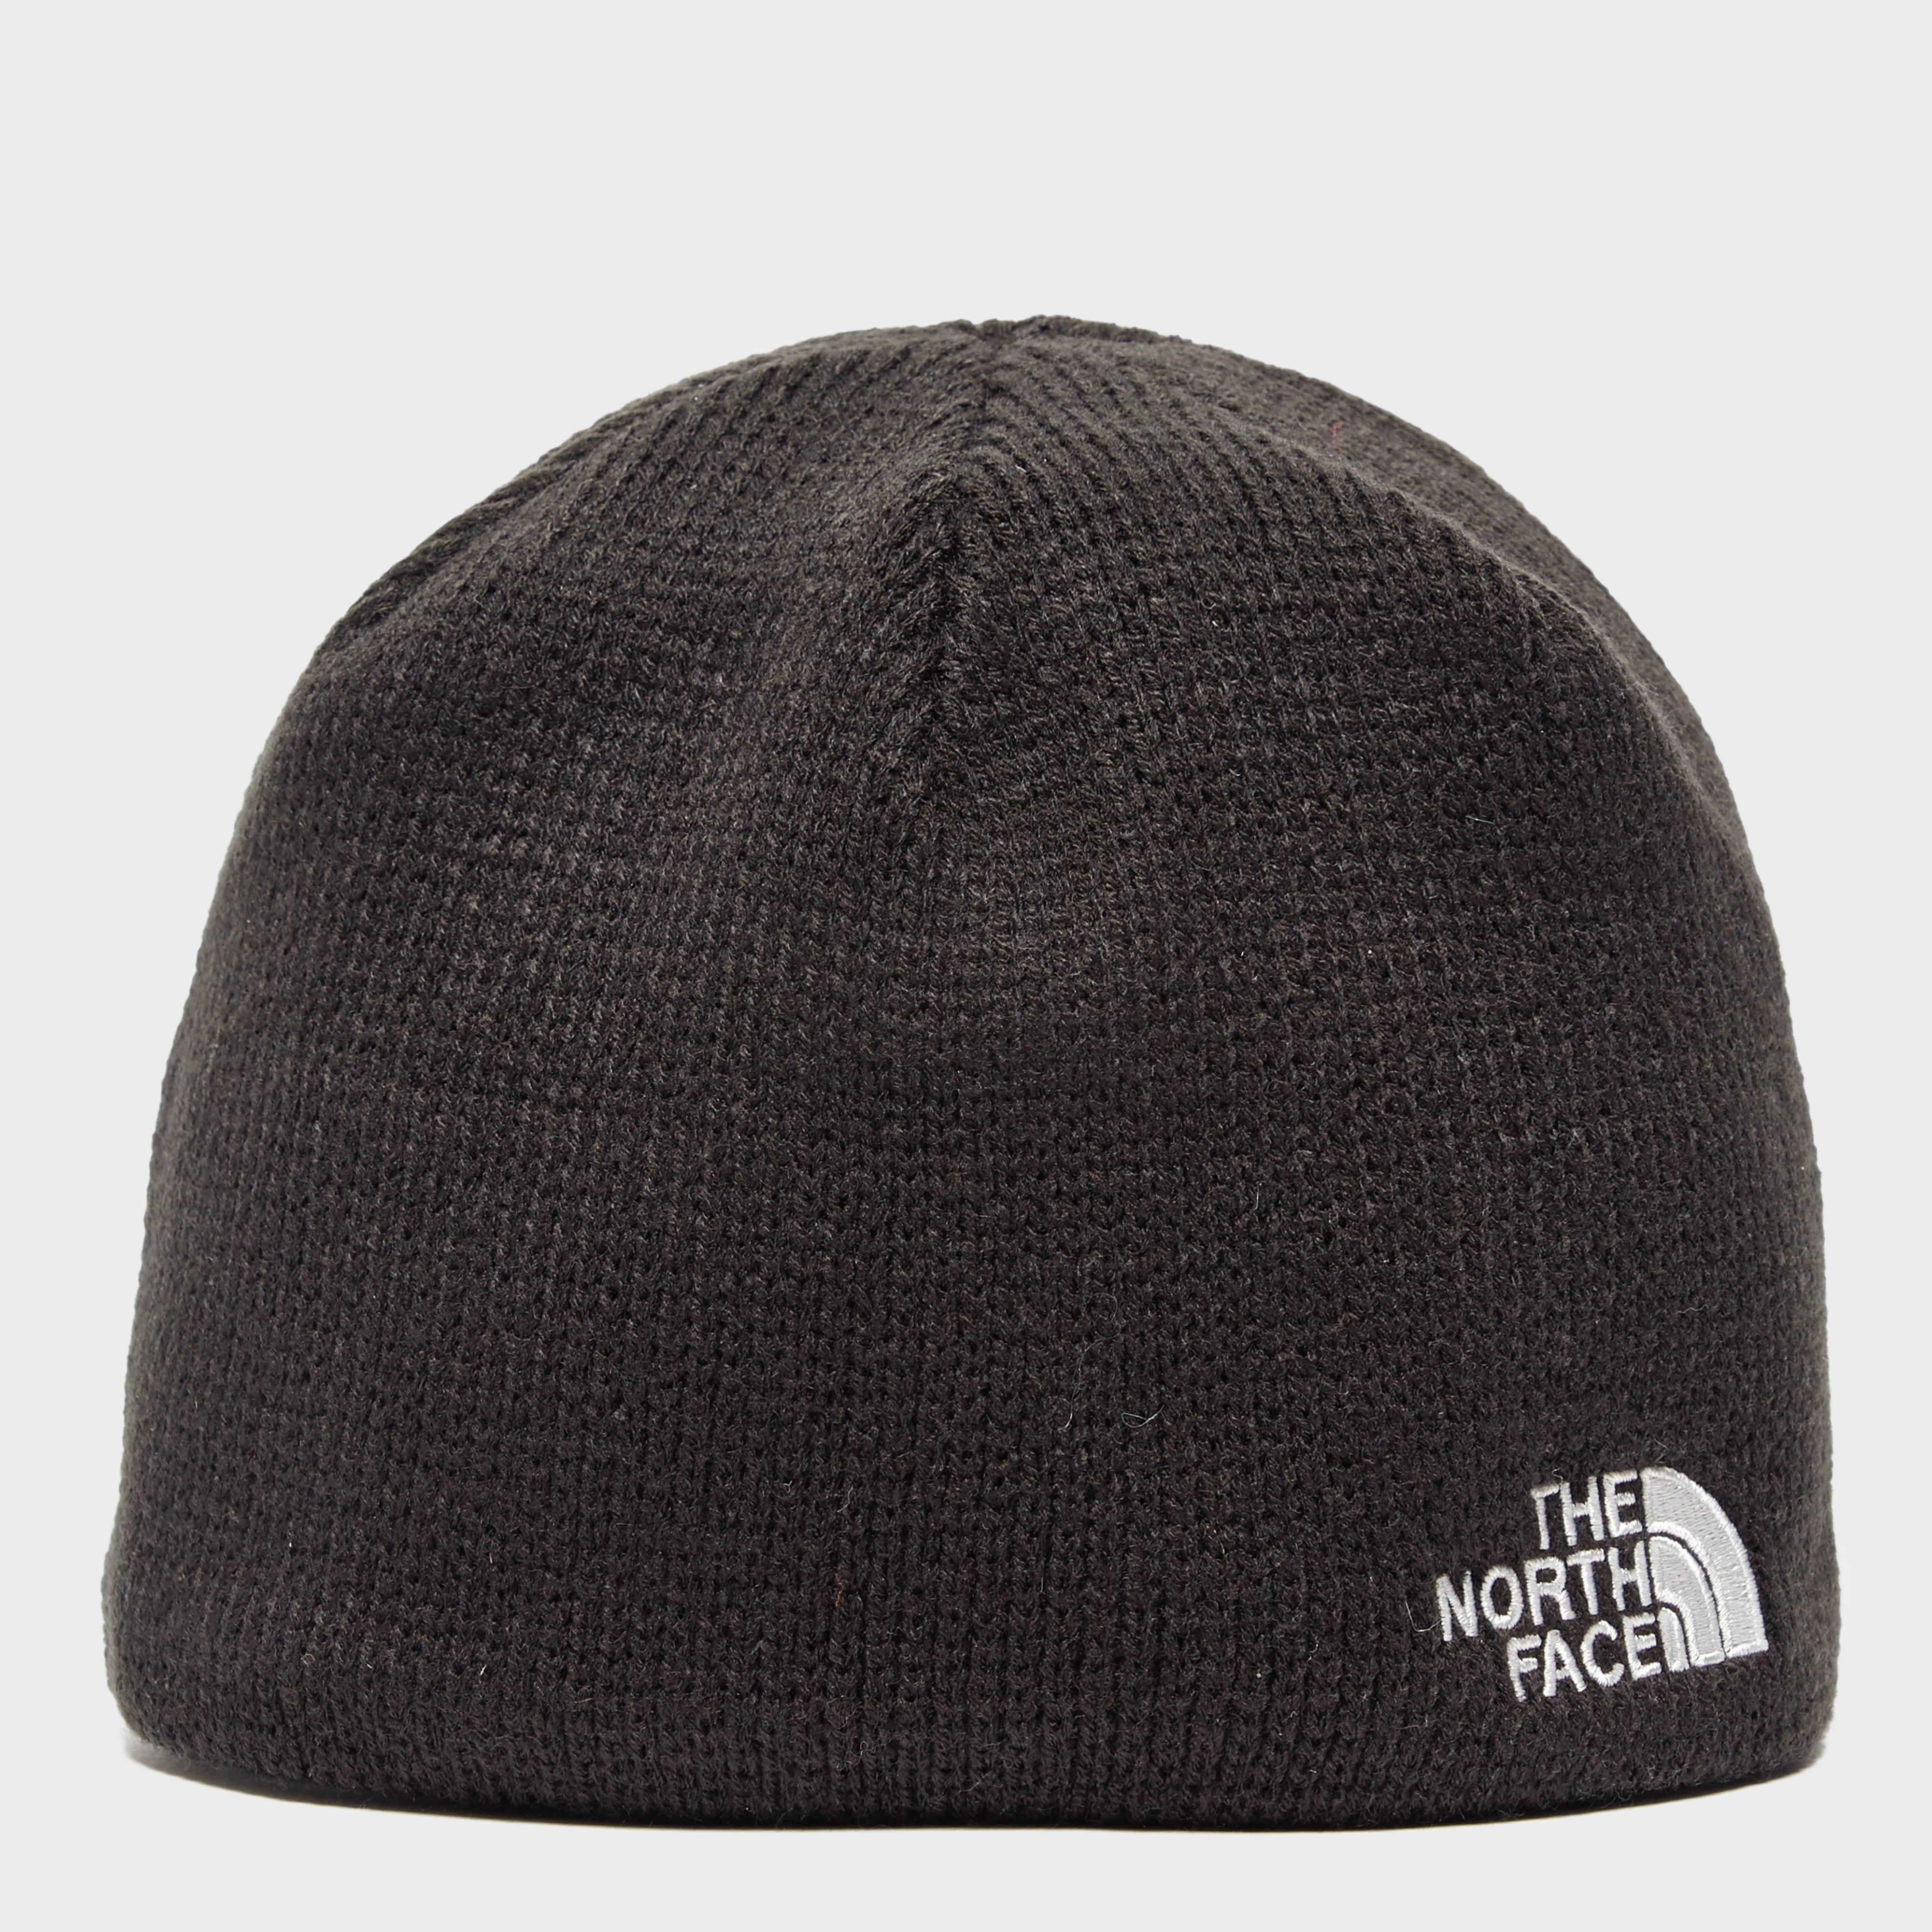 north face white winter hat - Marwood VeneerMarwood Veneer